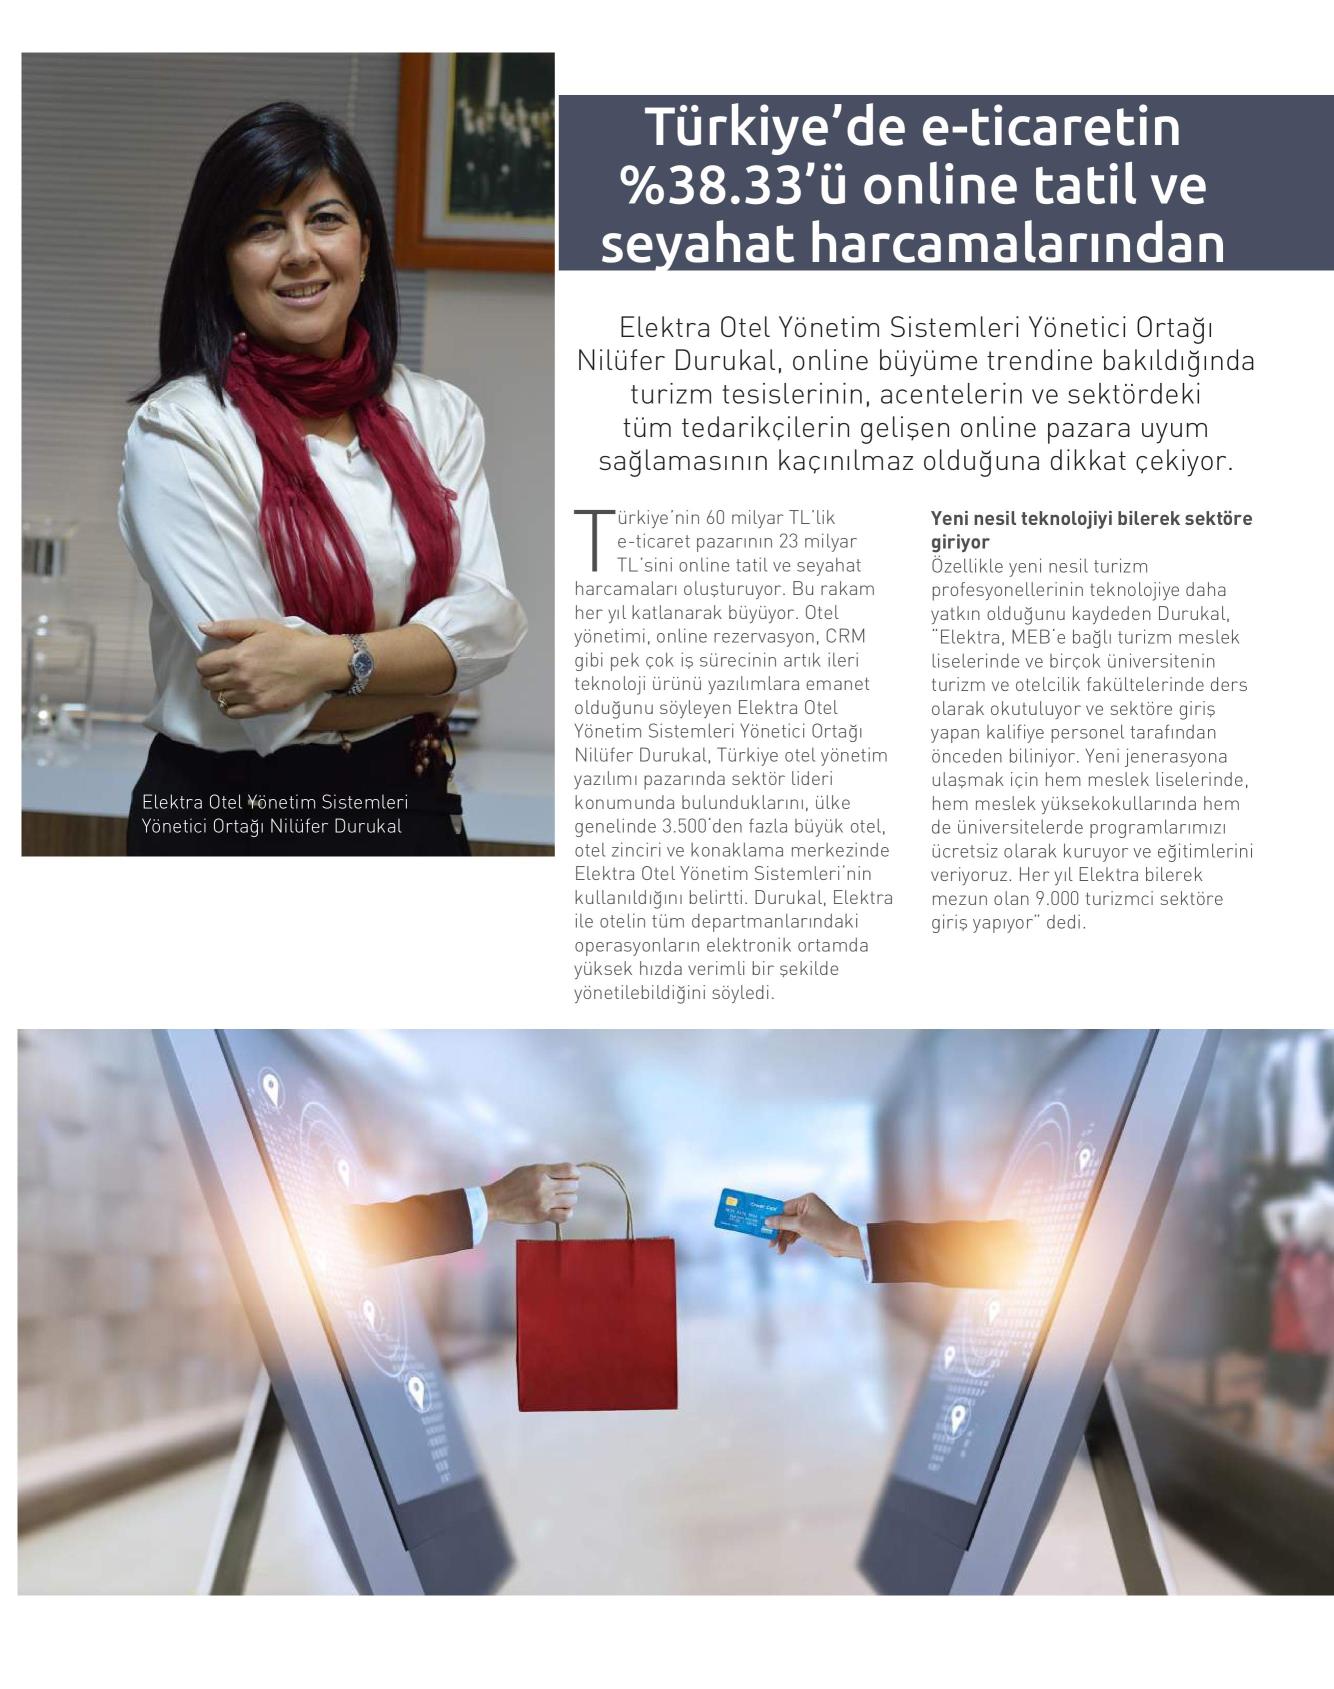 Türkiye’de e-Ticaretin %38,33’ü Online Tatil ve Seyahat Harcamalarından (Hotel-Restaurant Hi-Tech Dergisi Temmuz 2019)